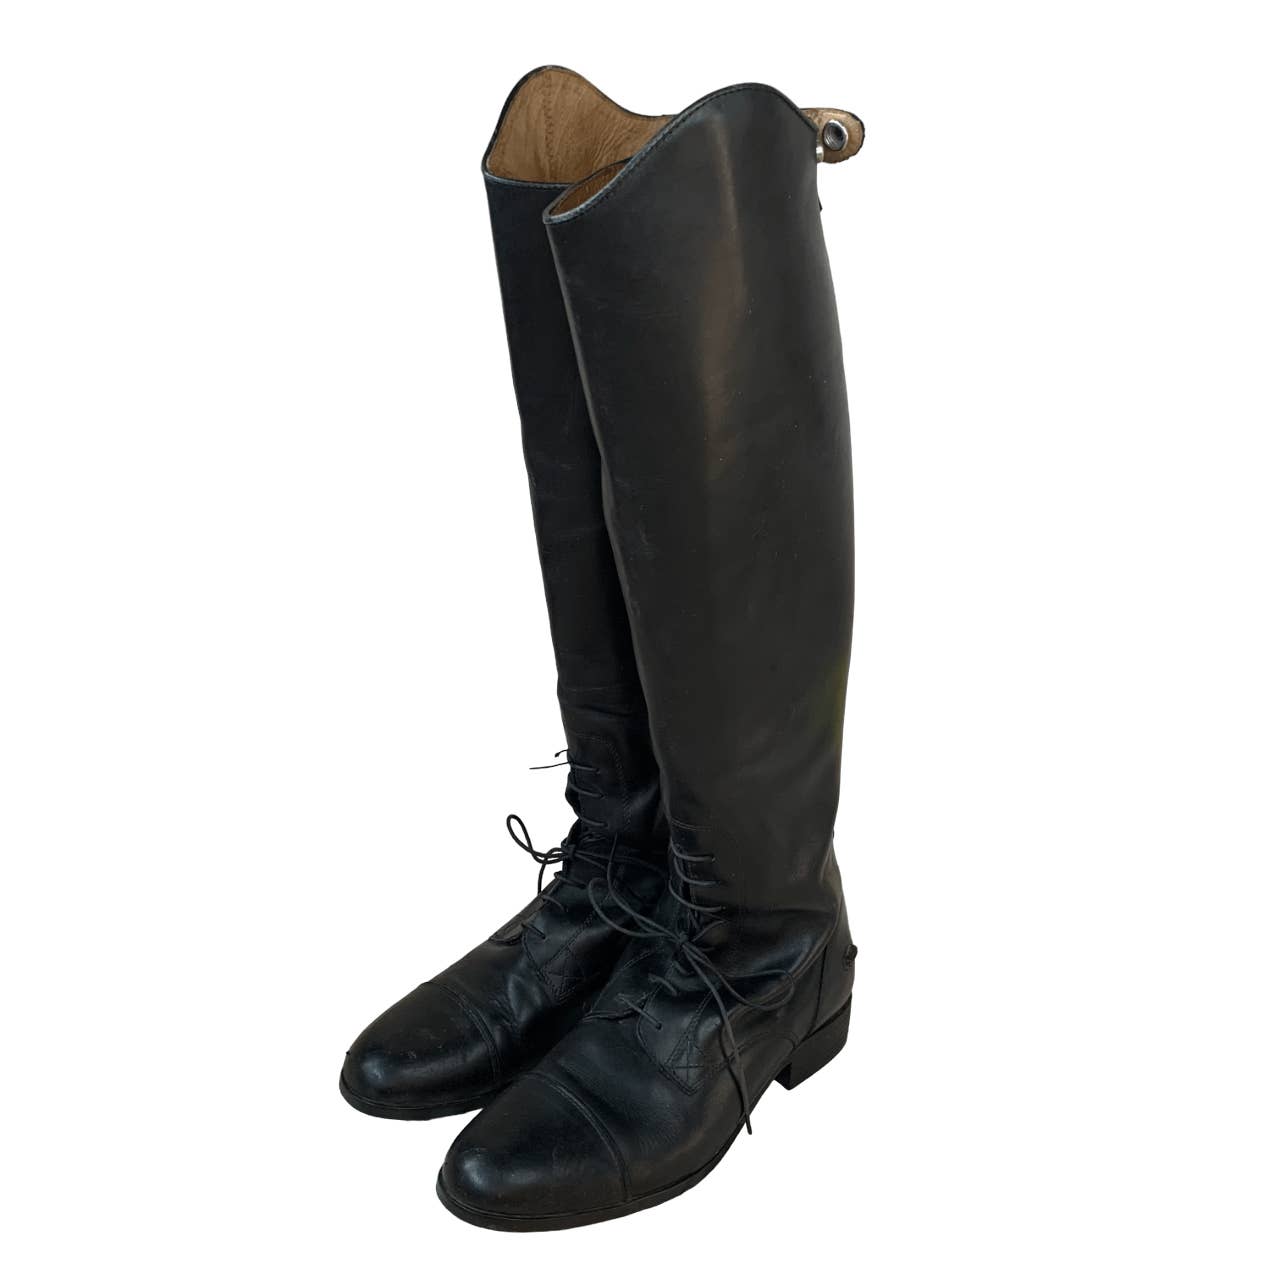 Ariat Black Heritage Zip Tall Field Boots - Woman's 11B Med/Reg